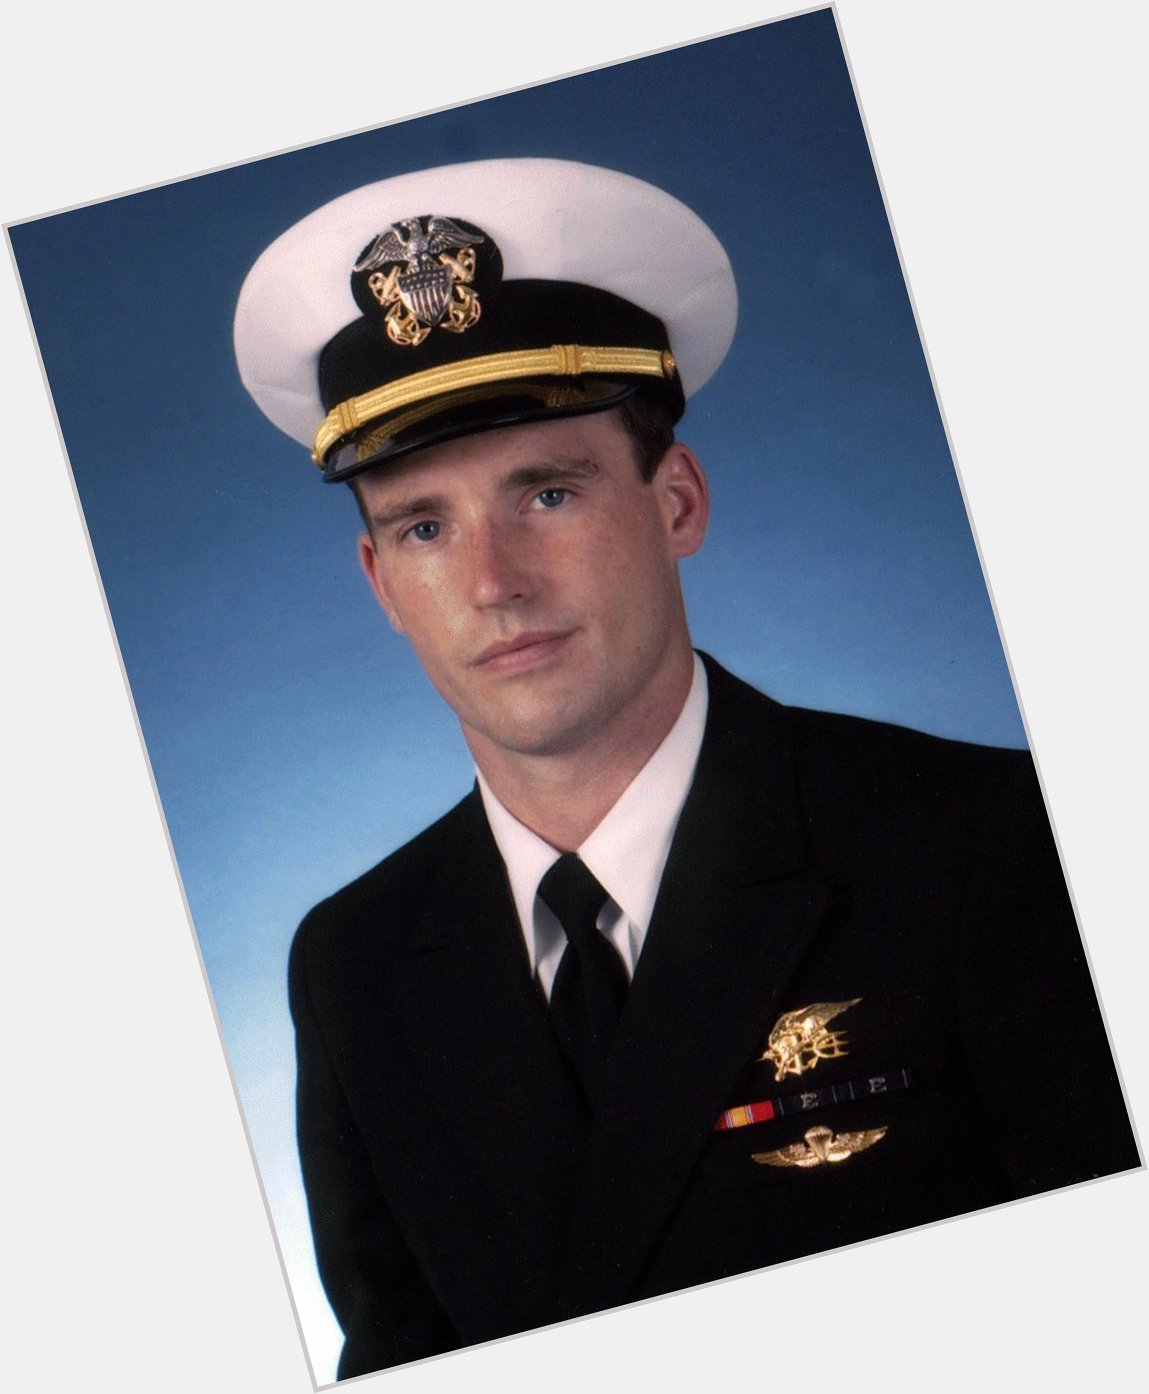 Happy heavenly birthday to fallen Navy SEAL Lt. Michael P. Murphy *Murph*  